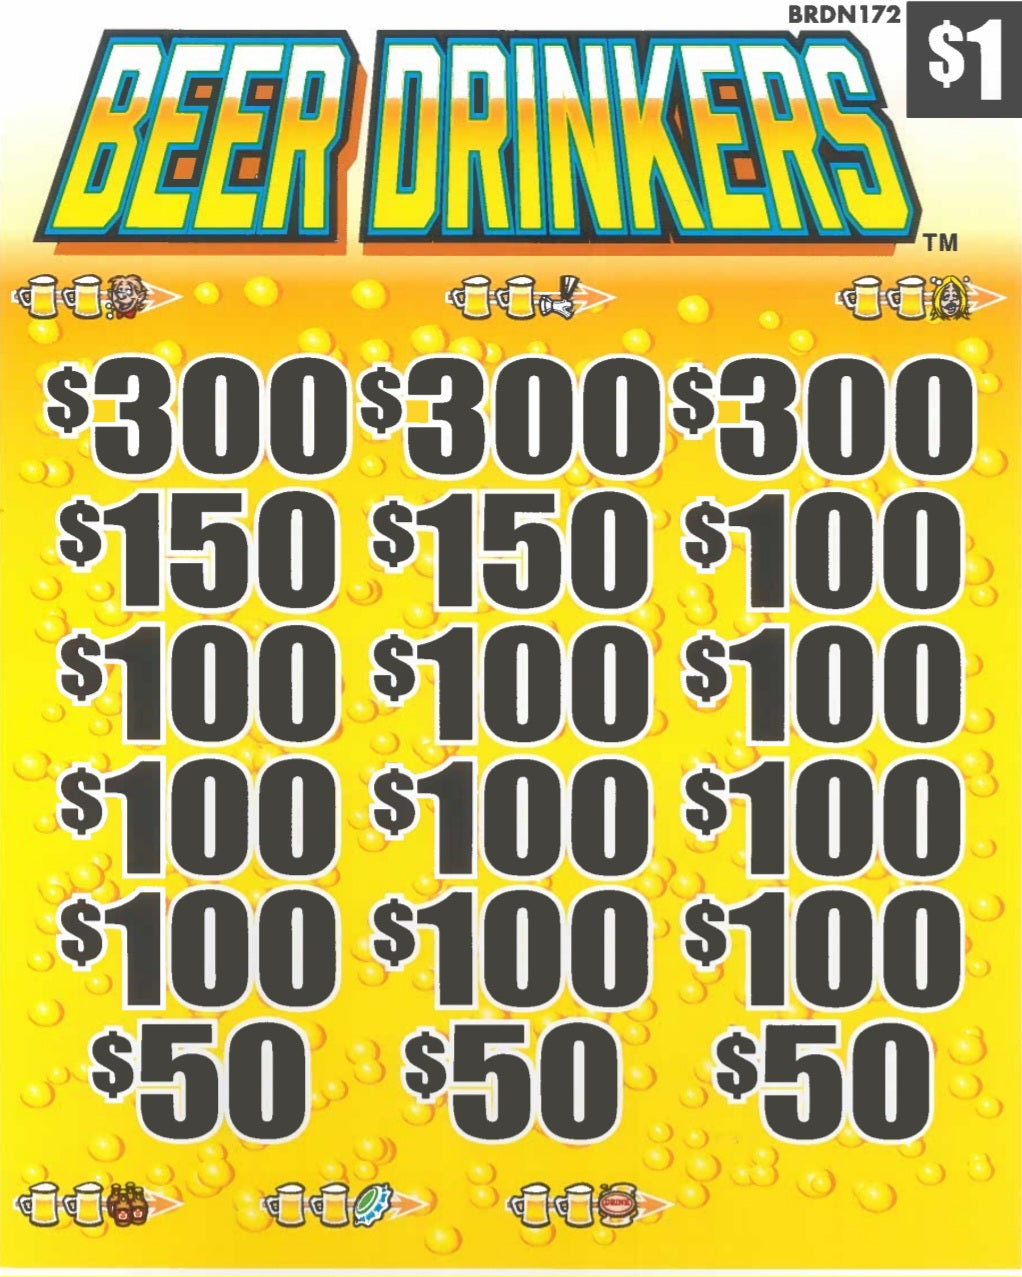 Beer Drinkers  BRDN172  74% Payout